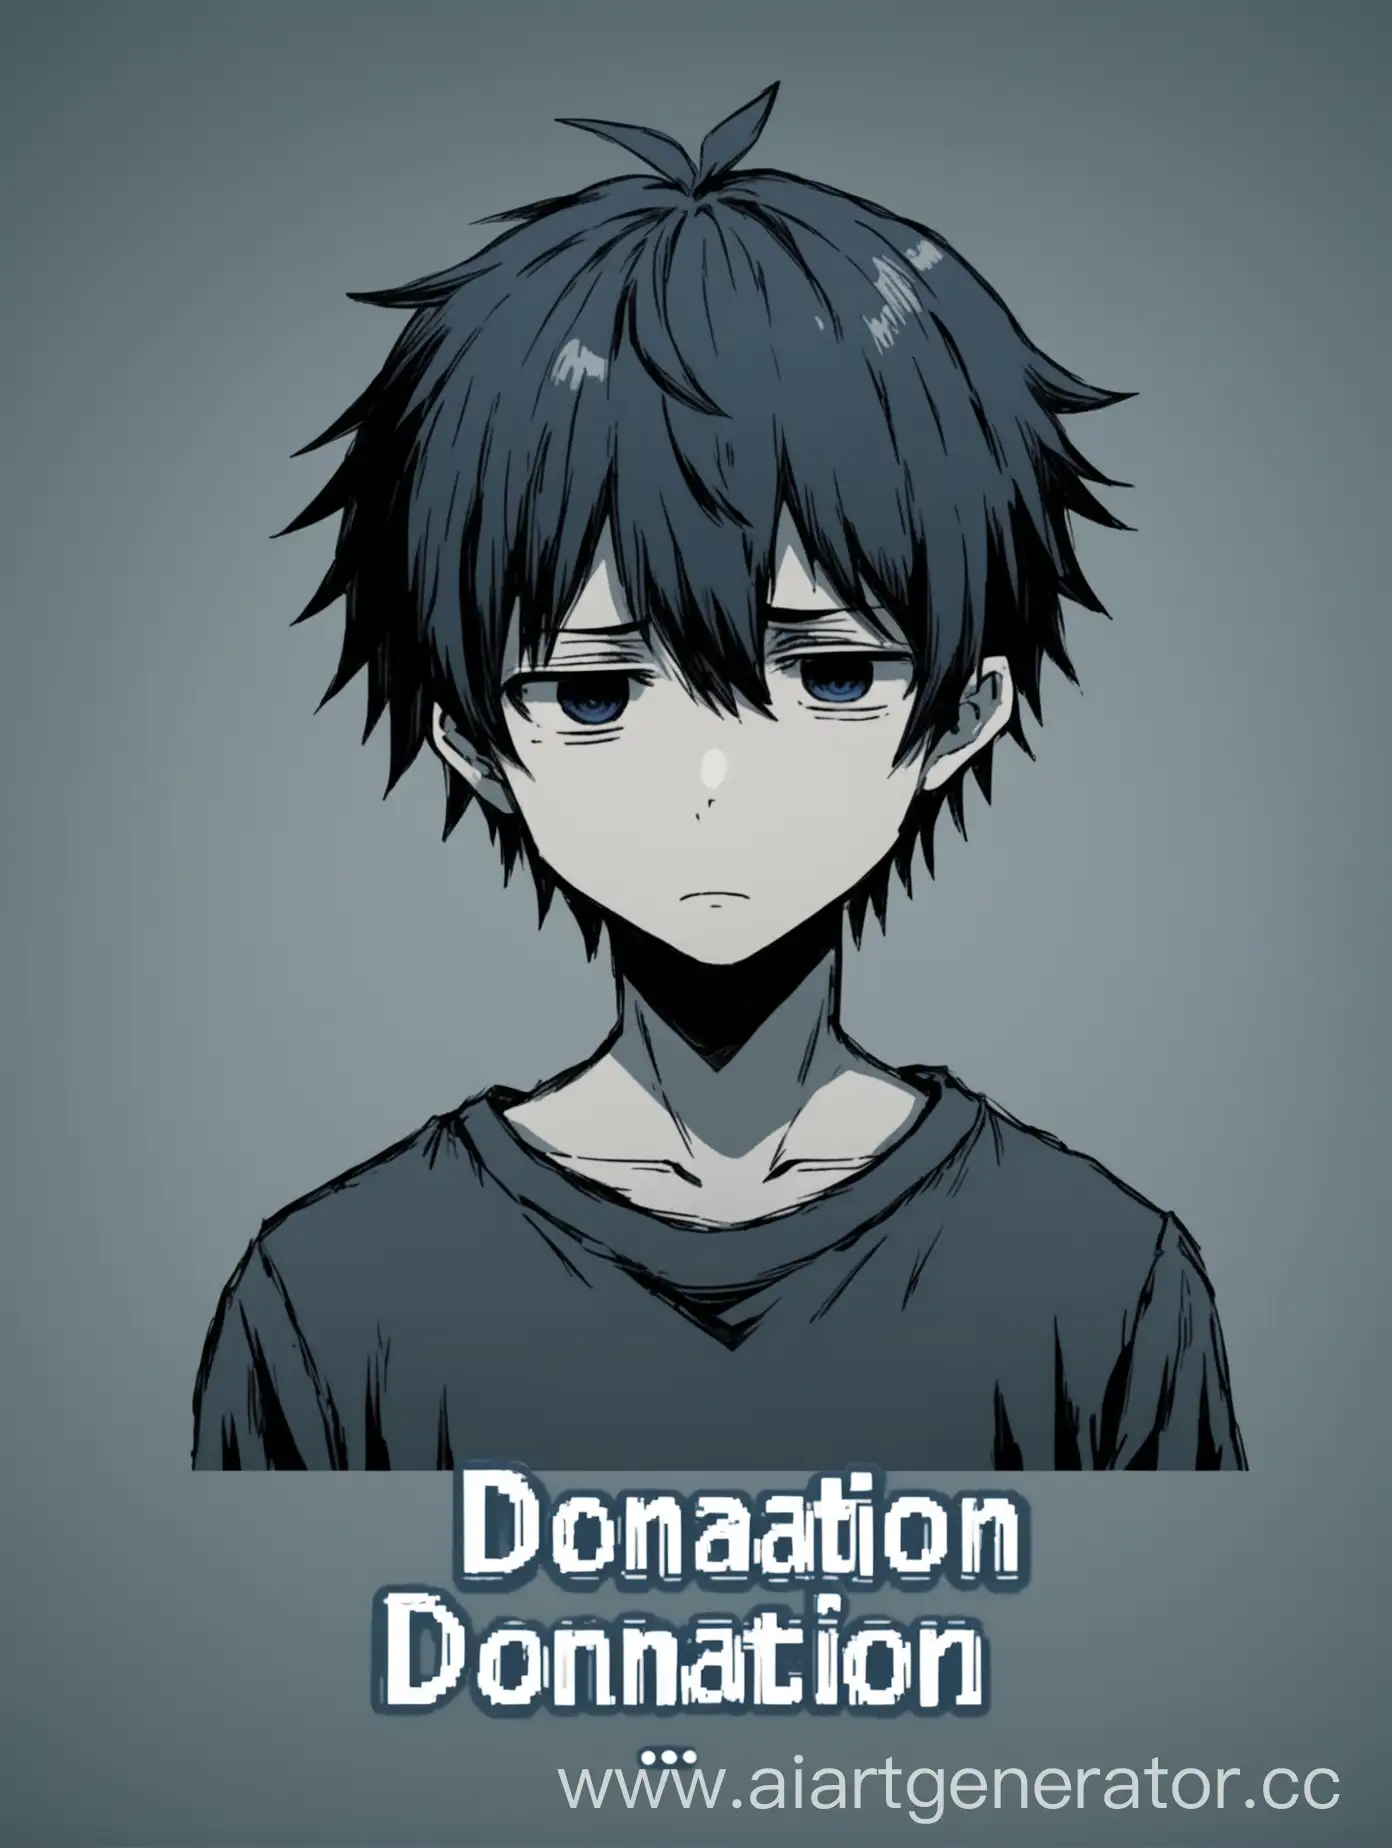 кнопка доната с депрессивным аниме парнем в чб стиле